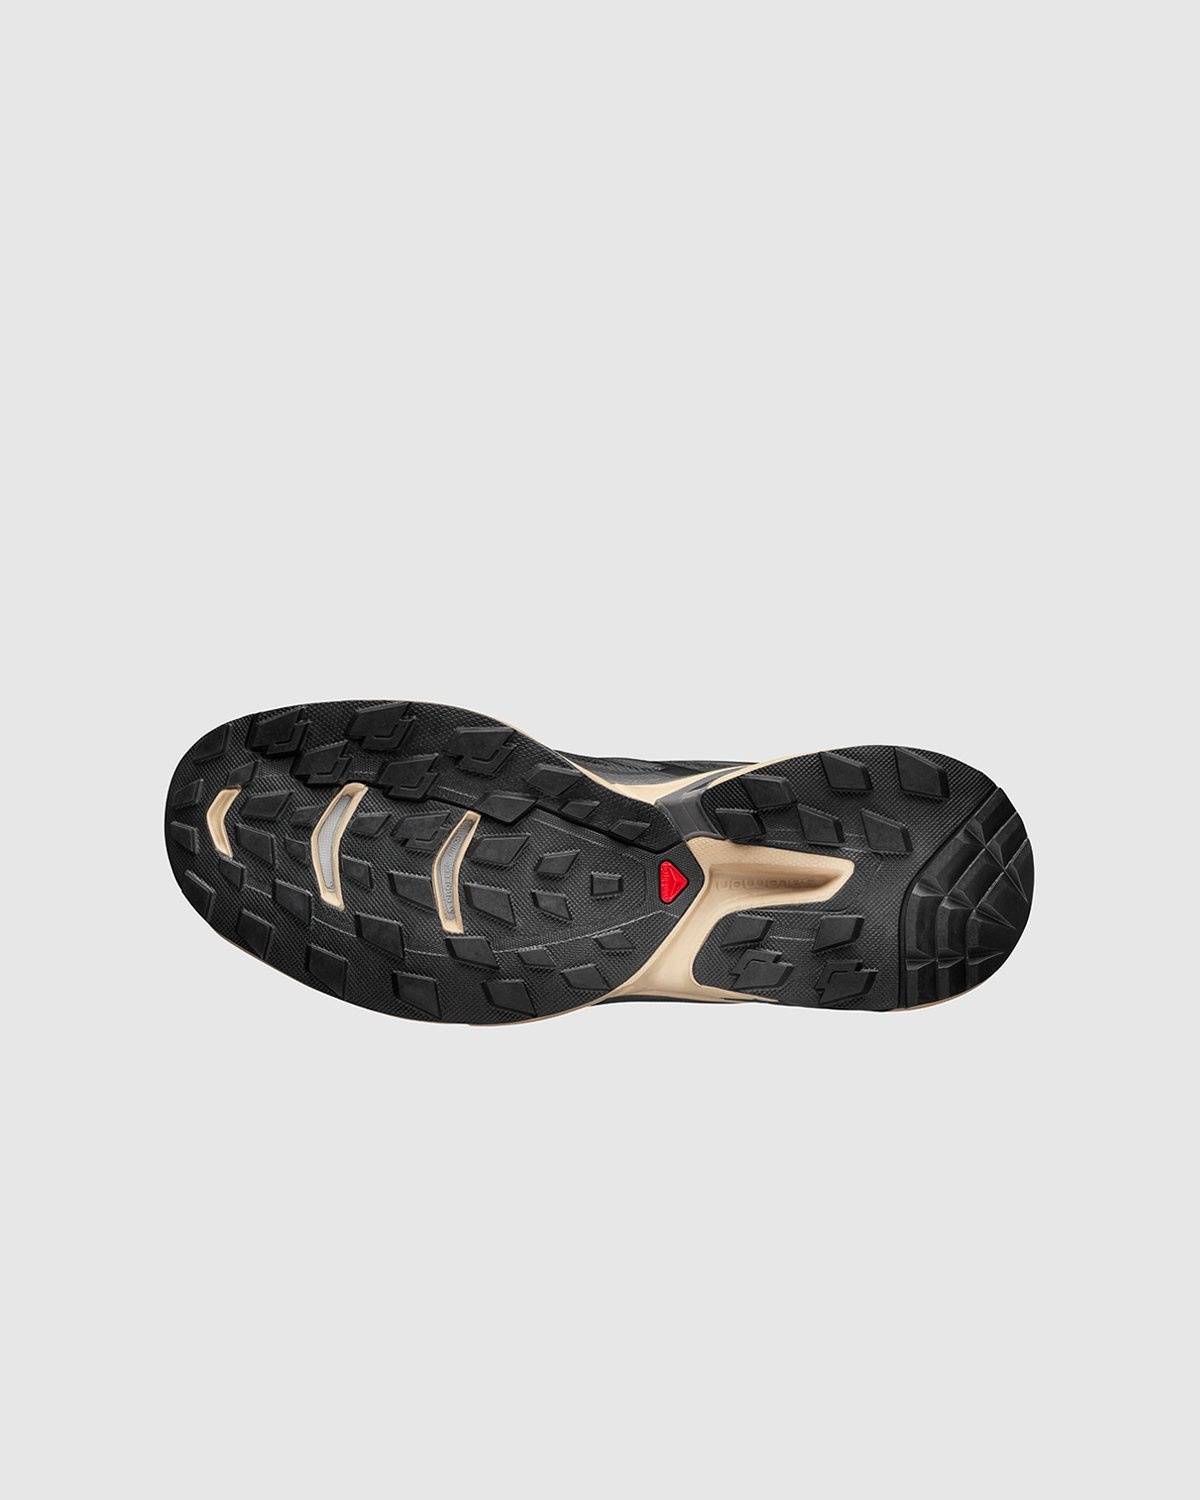 Salomon – XT-WINGS 2 ADVANCED Black/Safari/Magnet - Low Top Sneakers - Black - Image 5